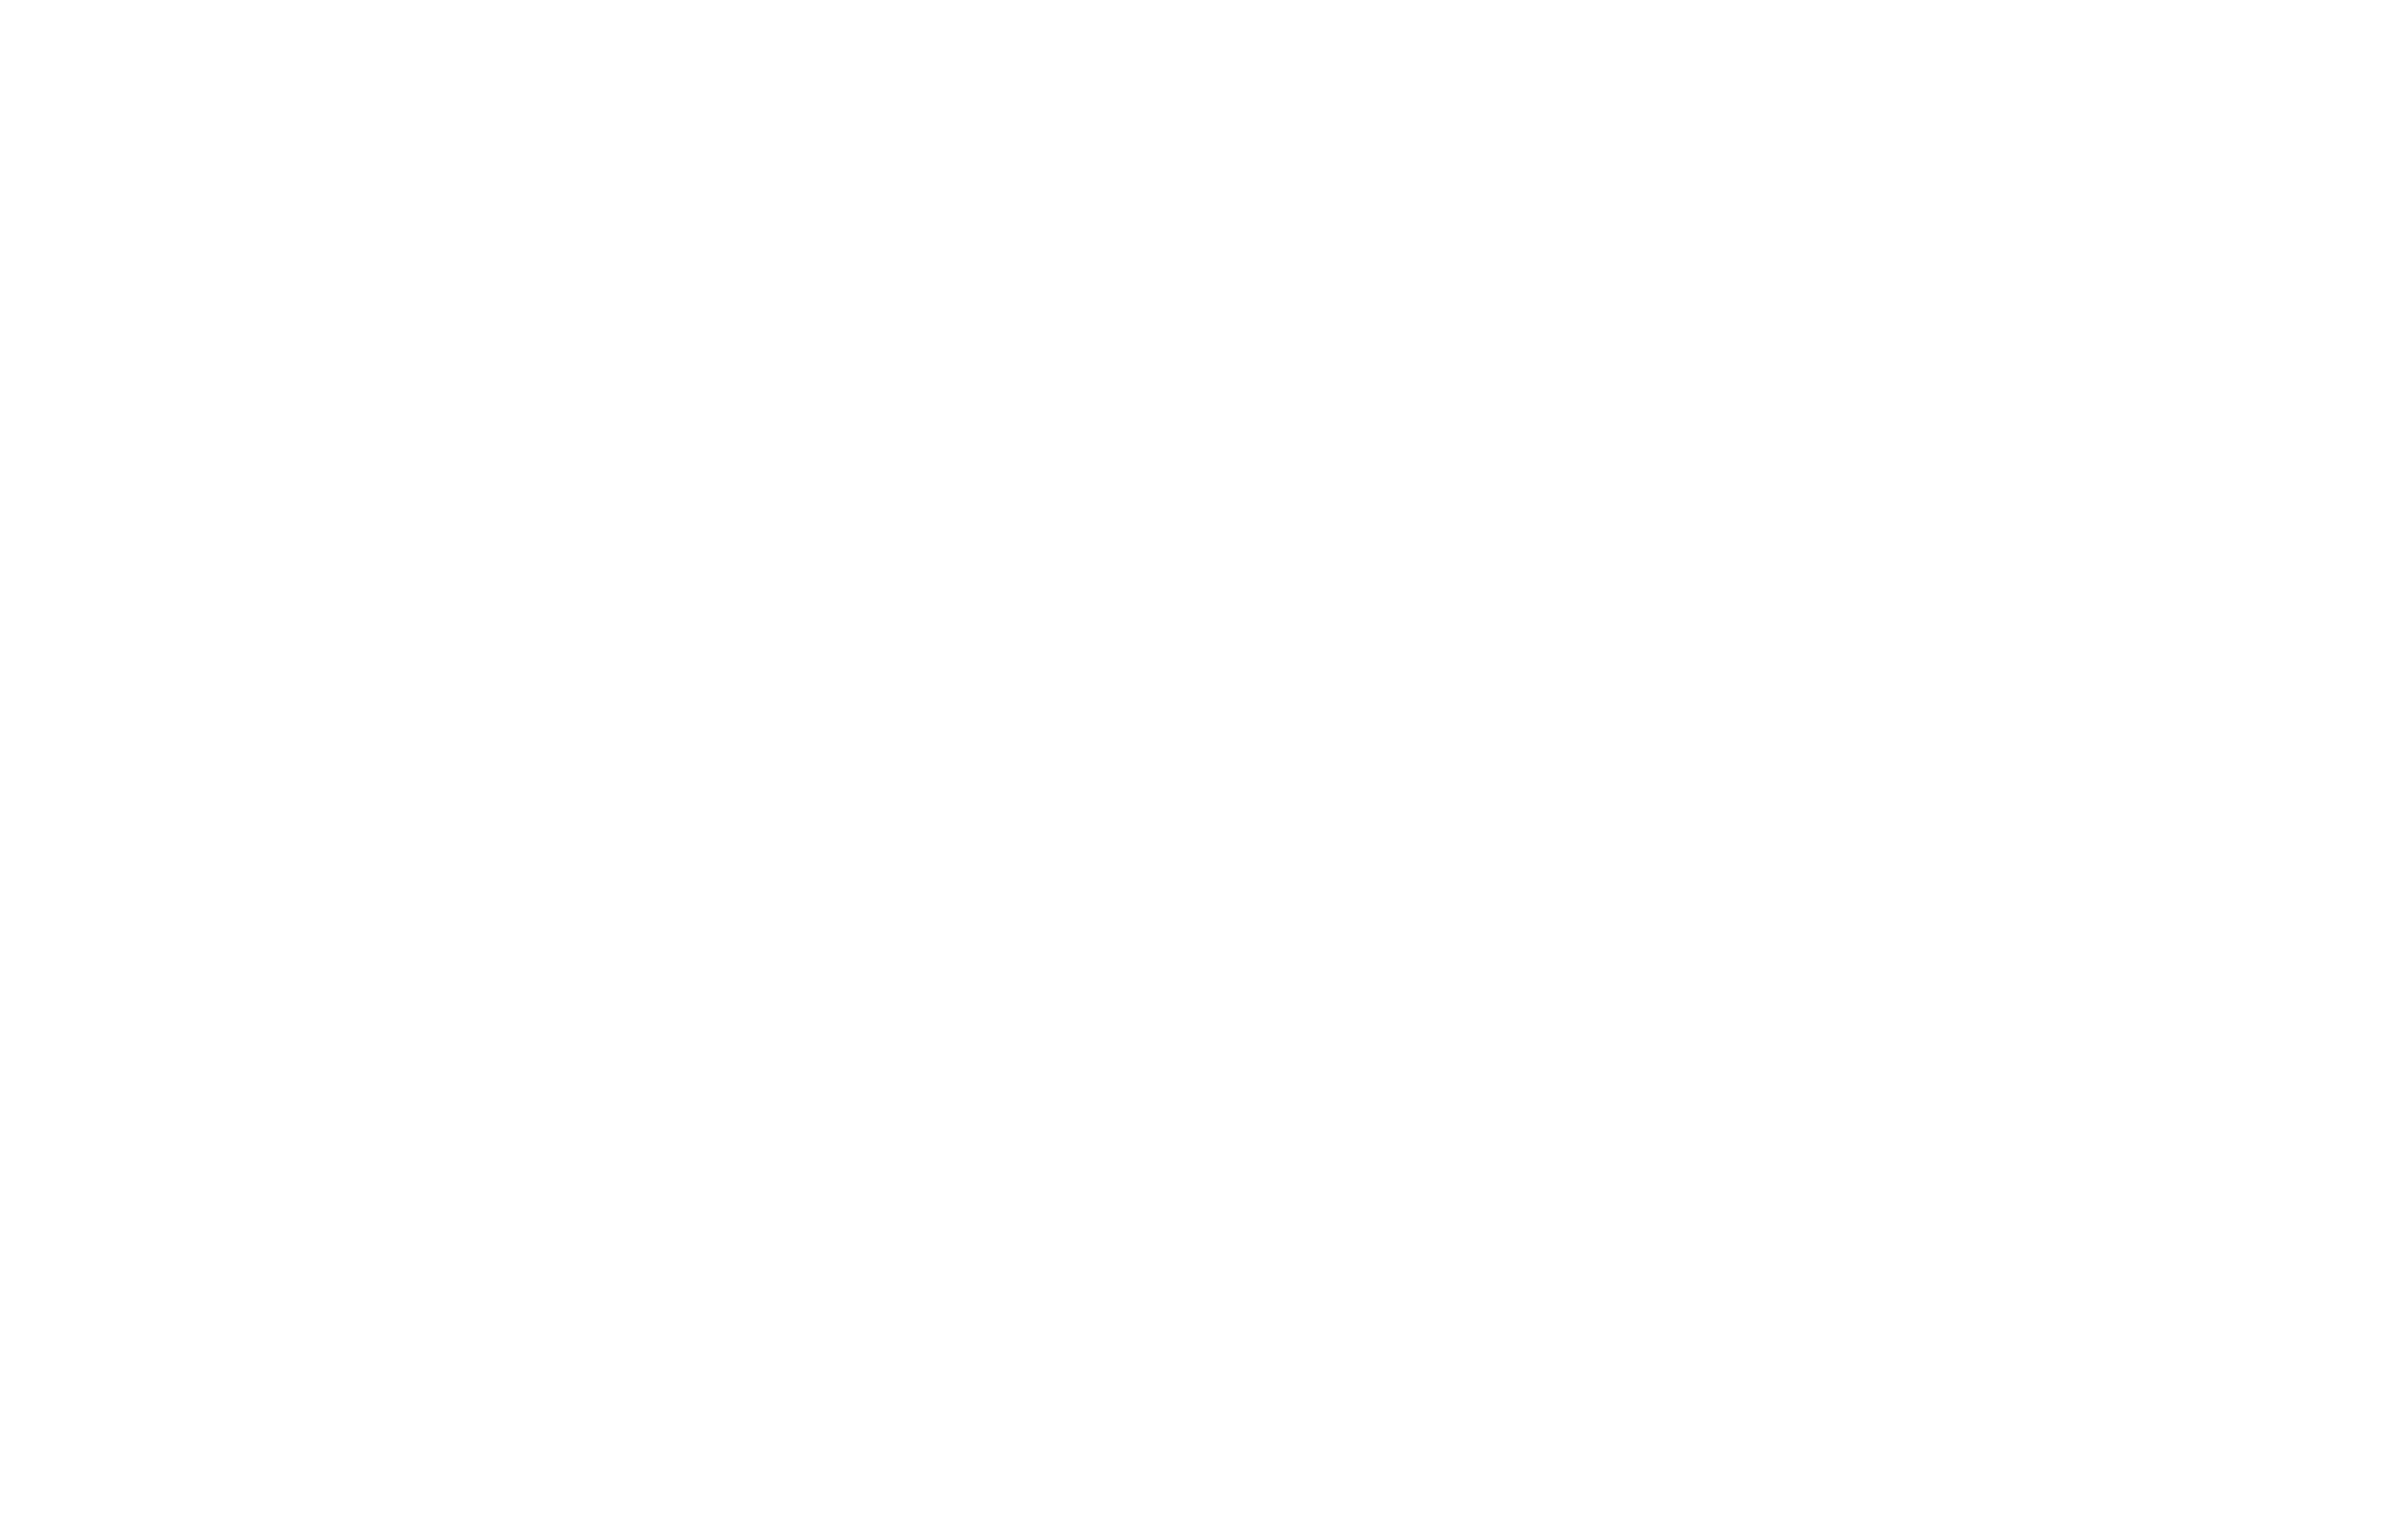 1960, Vígszínház (ekkor a Magyar Néphadsereg Színháza), az Aki szelet vet című dráma előadása. A felismerhető szereplők balról sötét ruhában Bilicsi Tivadar, Zách János, Pethes Sándor (középen világos kalapban) / Fotó: Fortepan Kotnyek Antal 